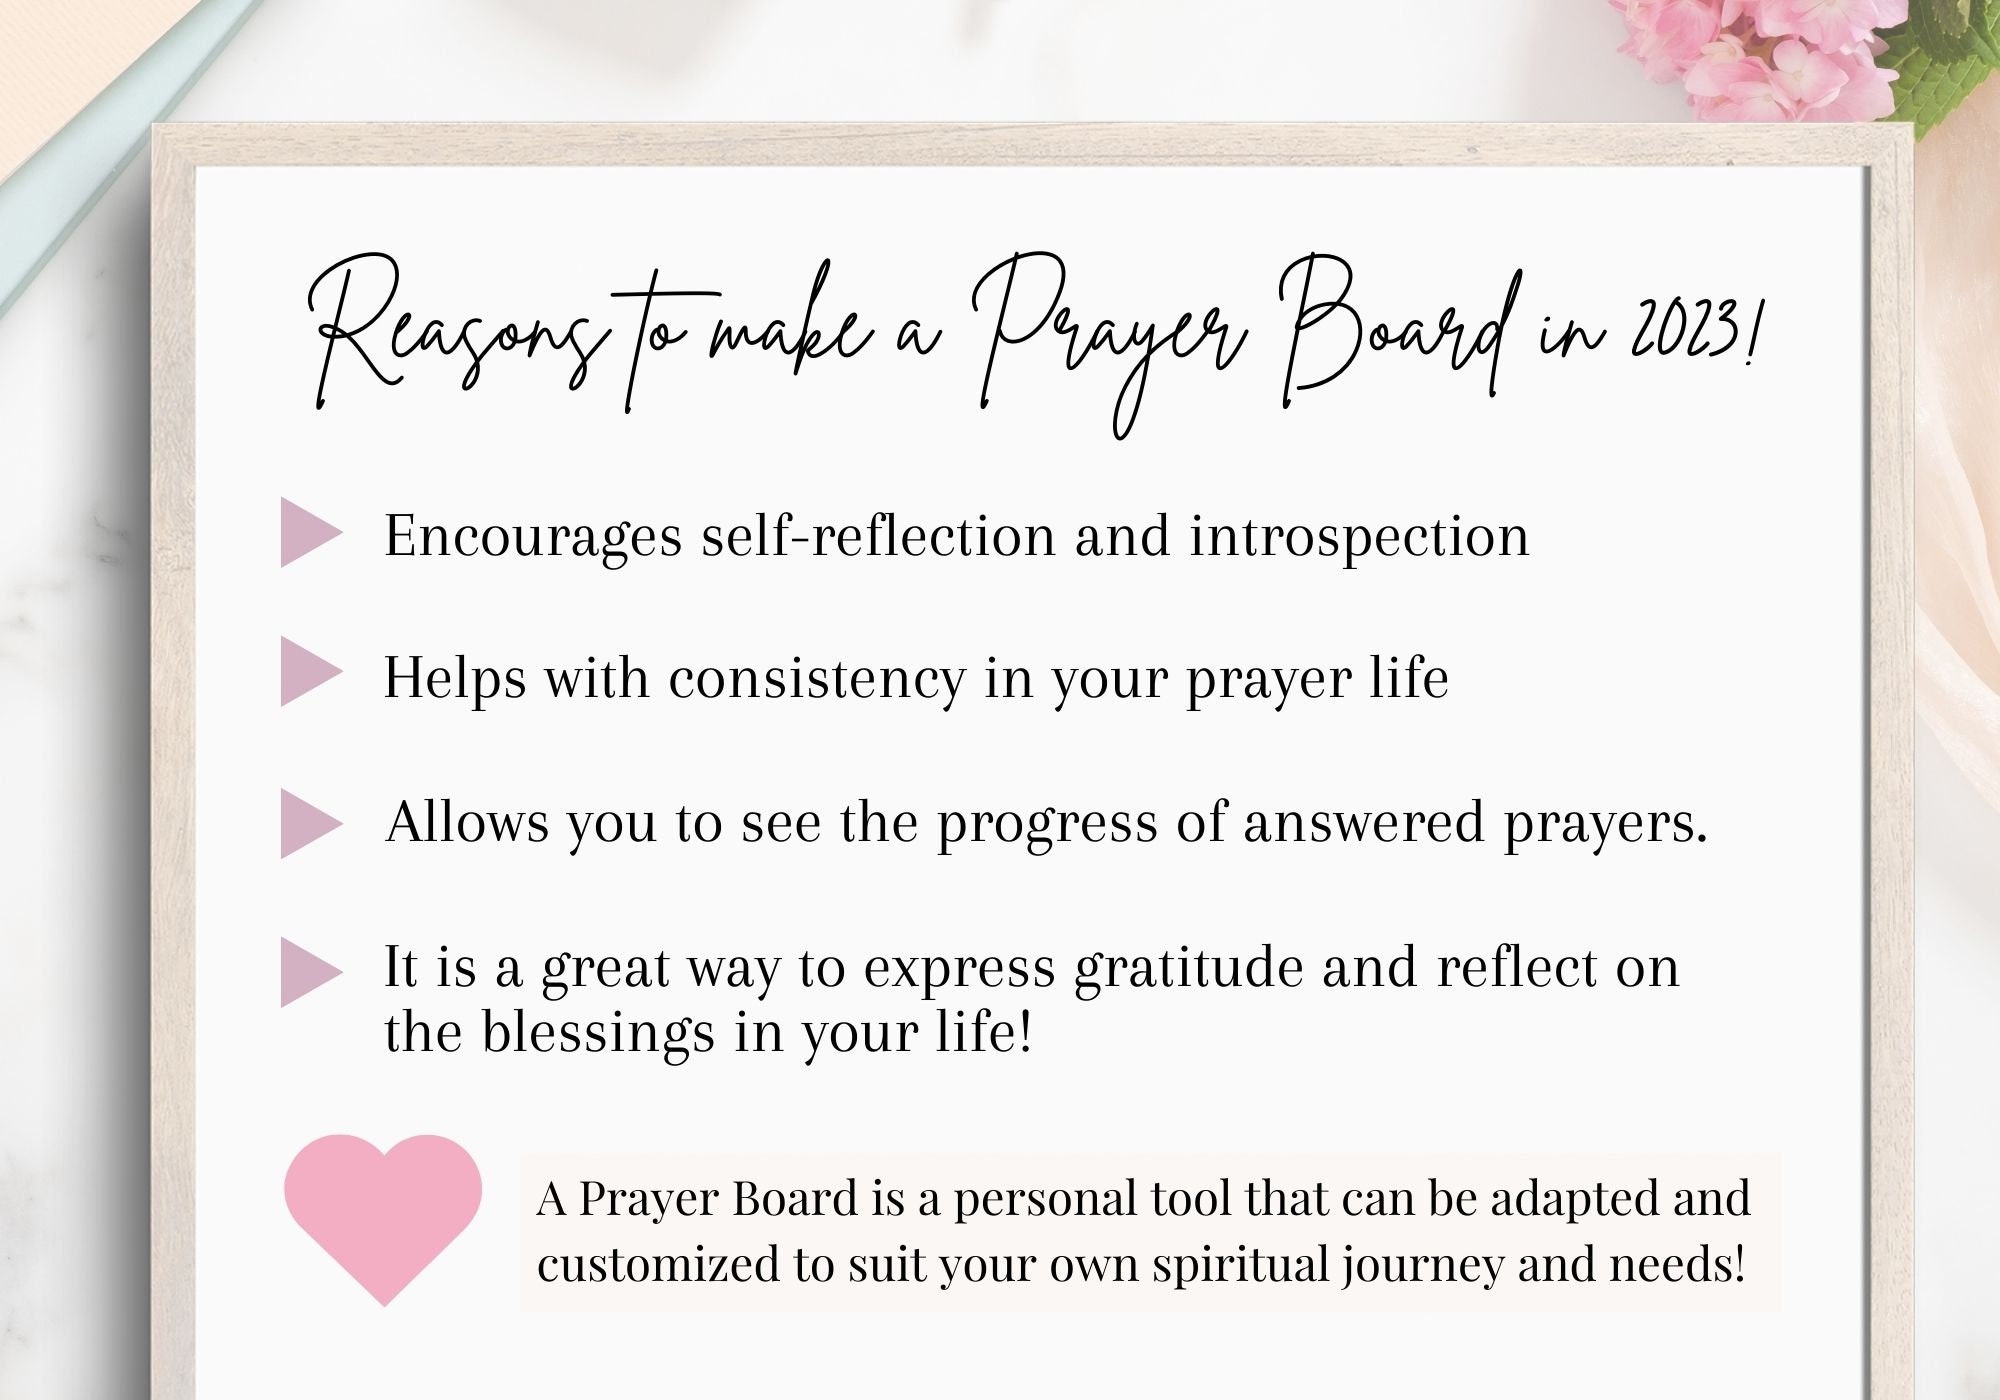 WE HAVE A PRAYER Prayer Printable Bulletin Board Kit & Door Décor